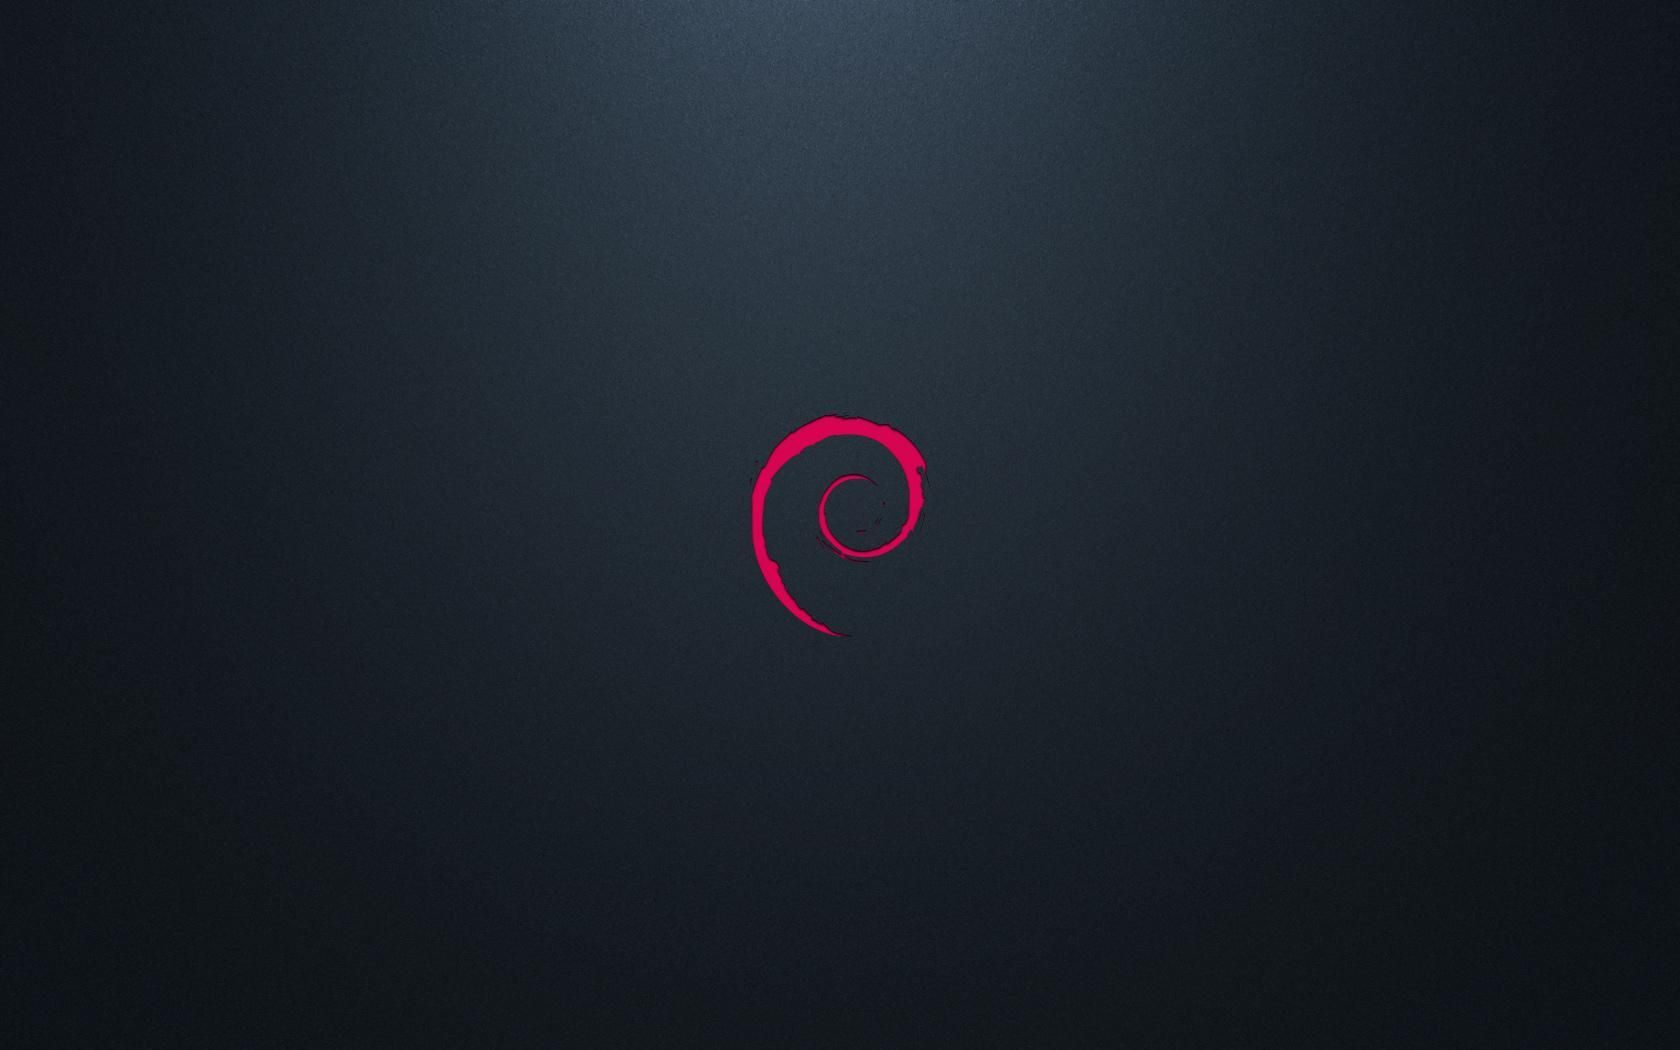 Debian Bleu Red And Debian Goro Wallpapers Tux | HD Wallpapers Range